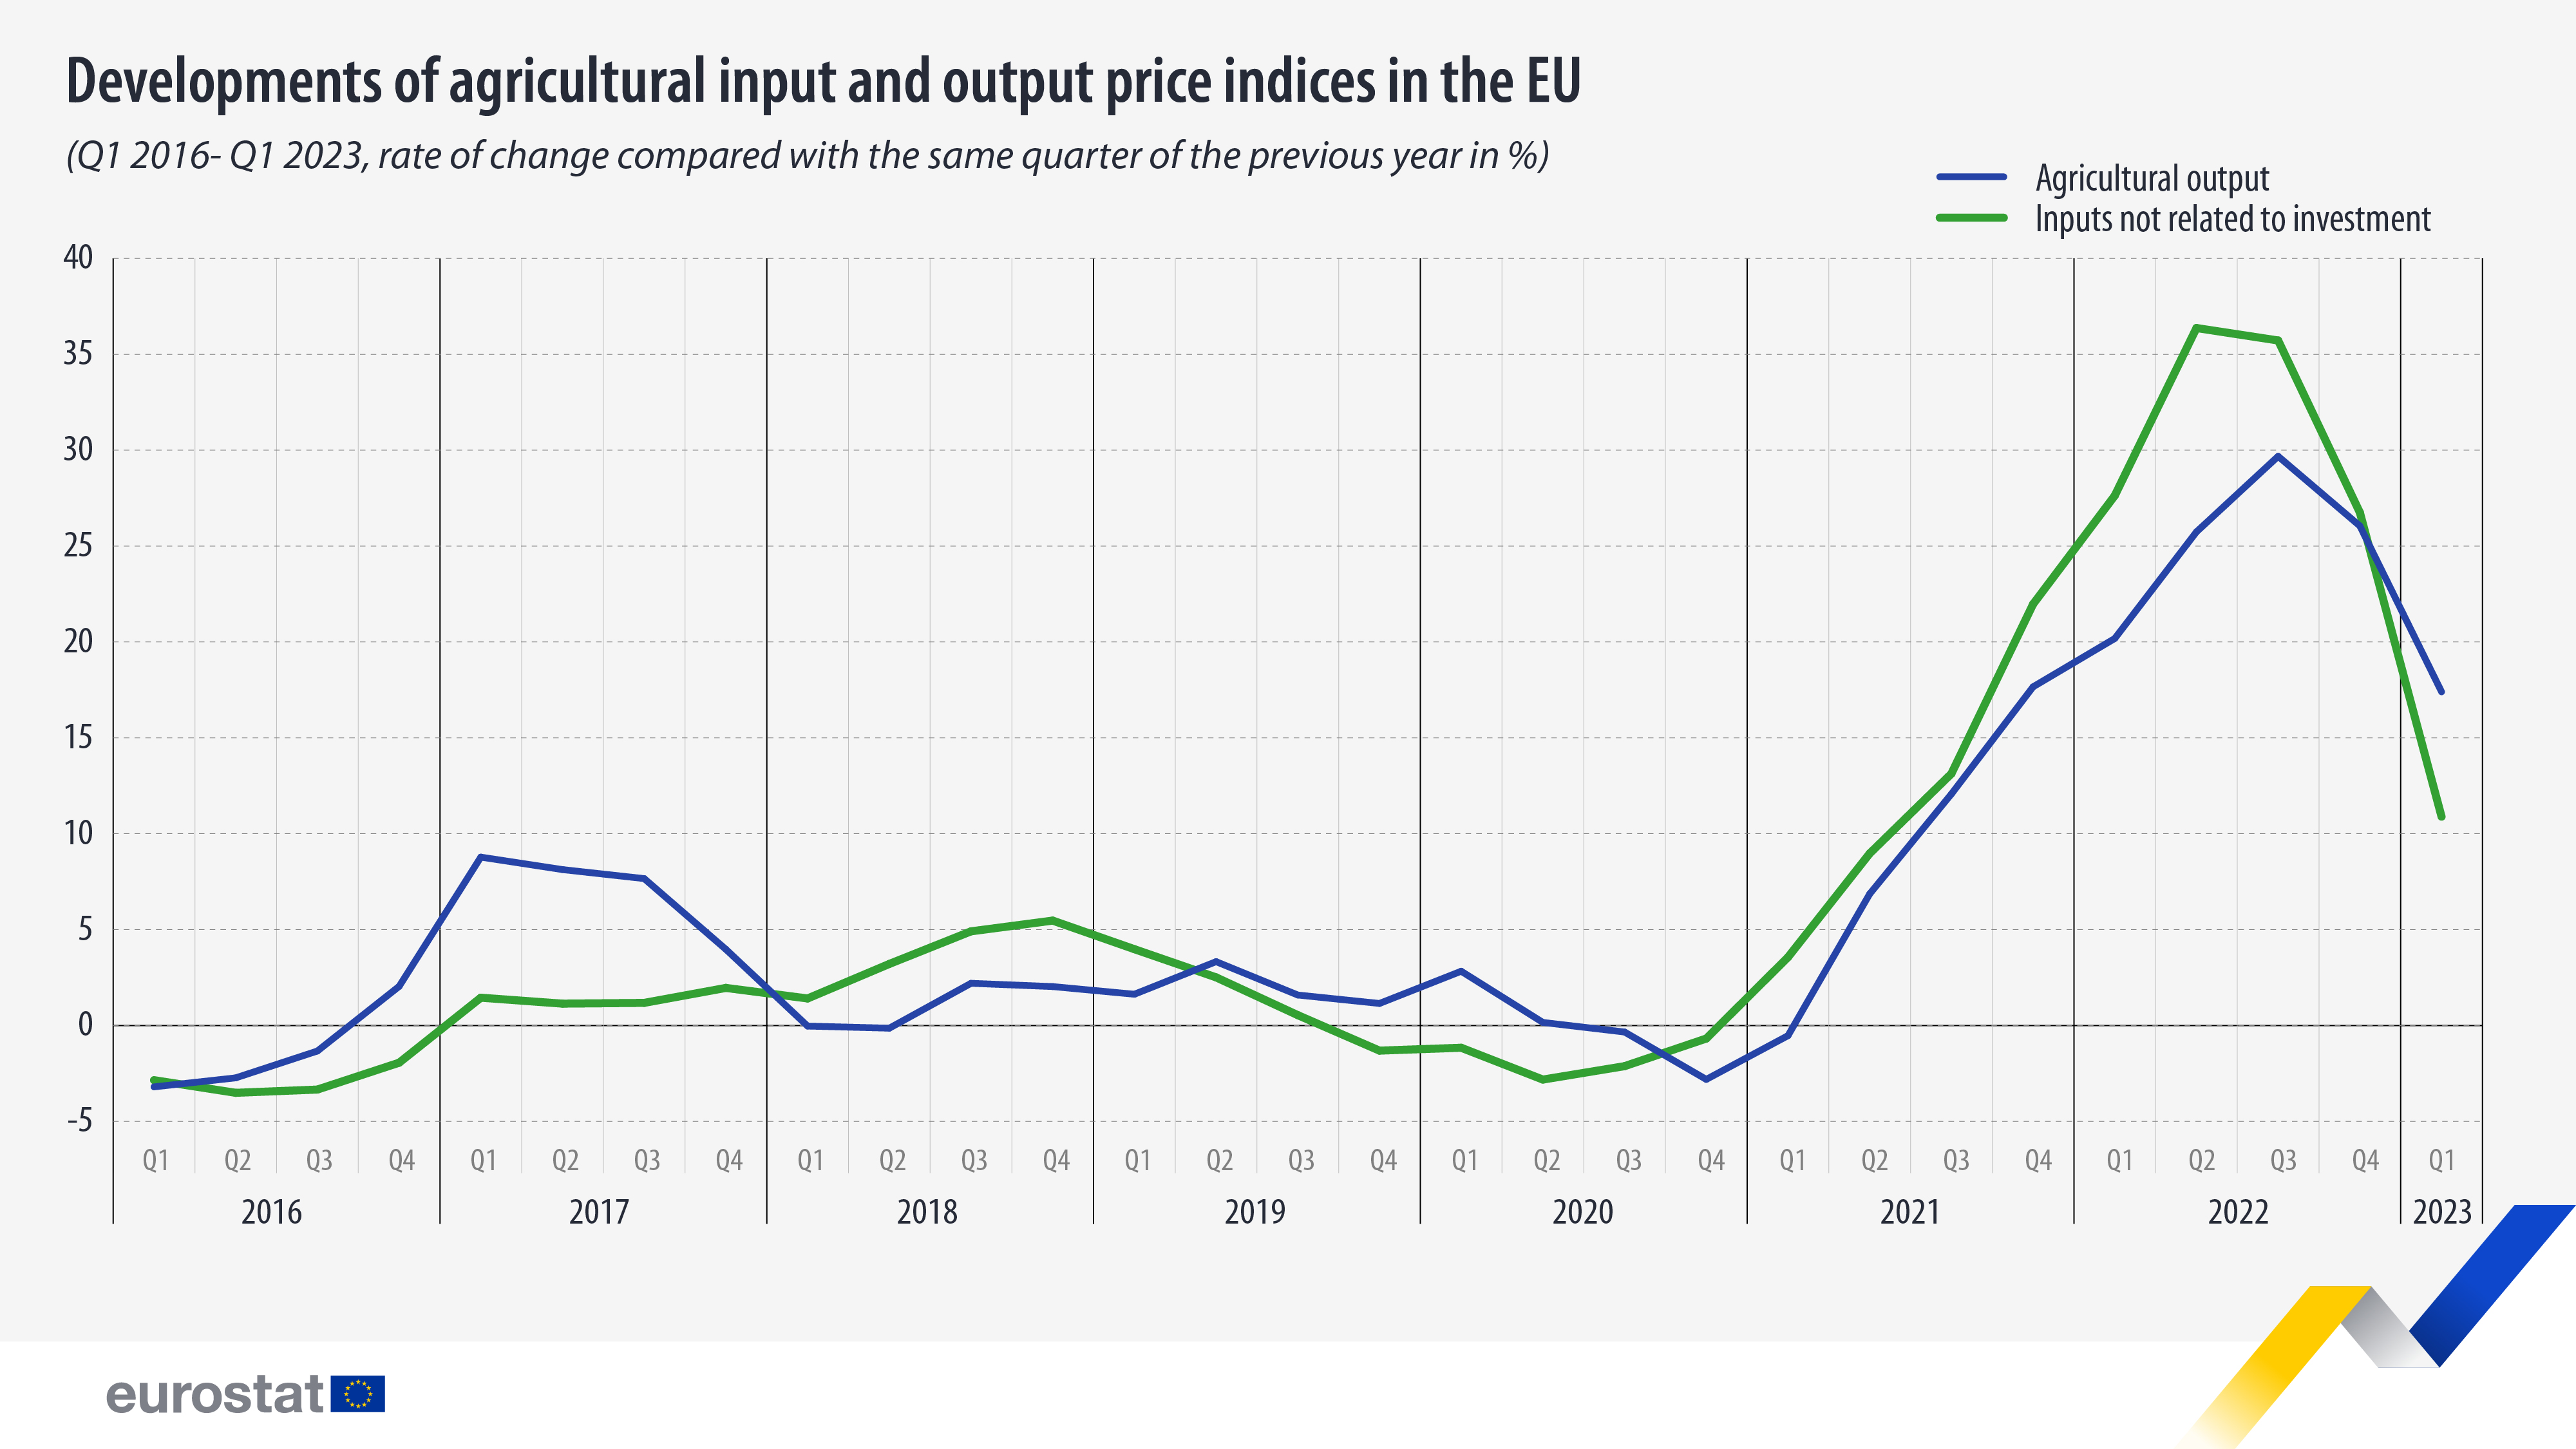 Γραμμικό γράφημα: Εξελίξεις δεικτών τιμών γεωργικών εισροών και εκροών στην ΕΕ, πρώτο τρίμηνο 2016-1 τρίμηνο 2023, ρυθμός μεταβολής σε σύγκριση με το ίδιο τρίμηνο του προηγούμενου έτους σε %